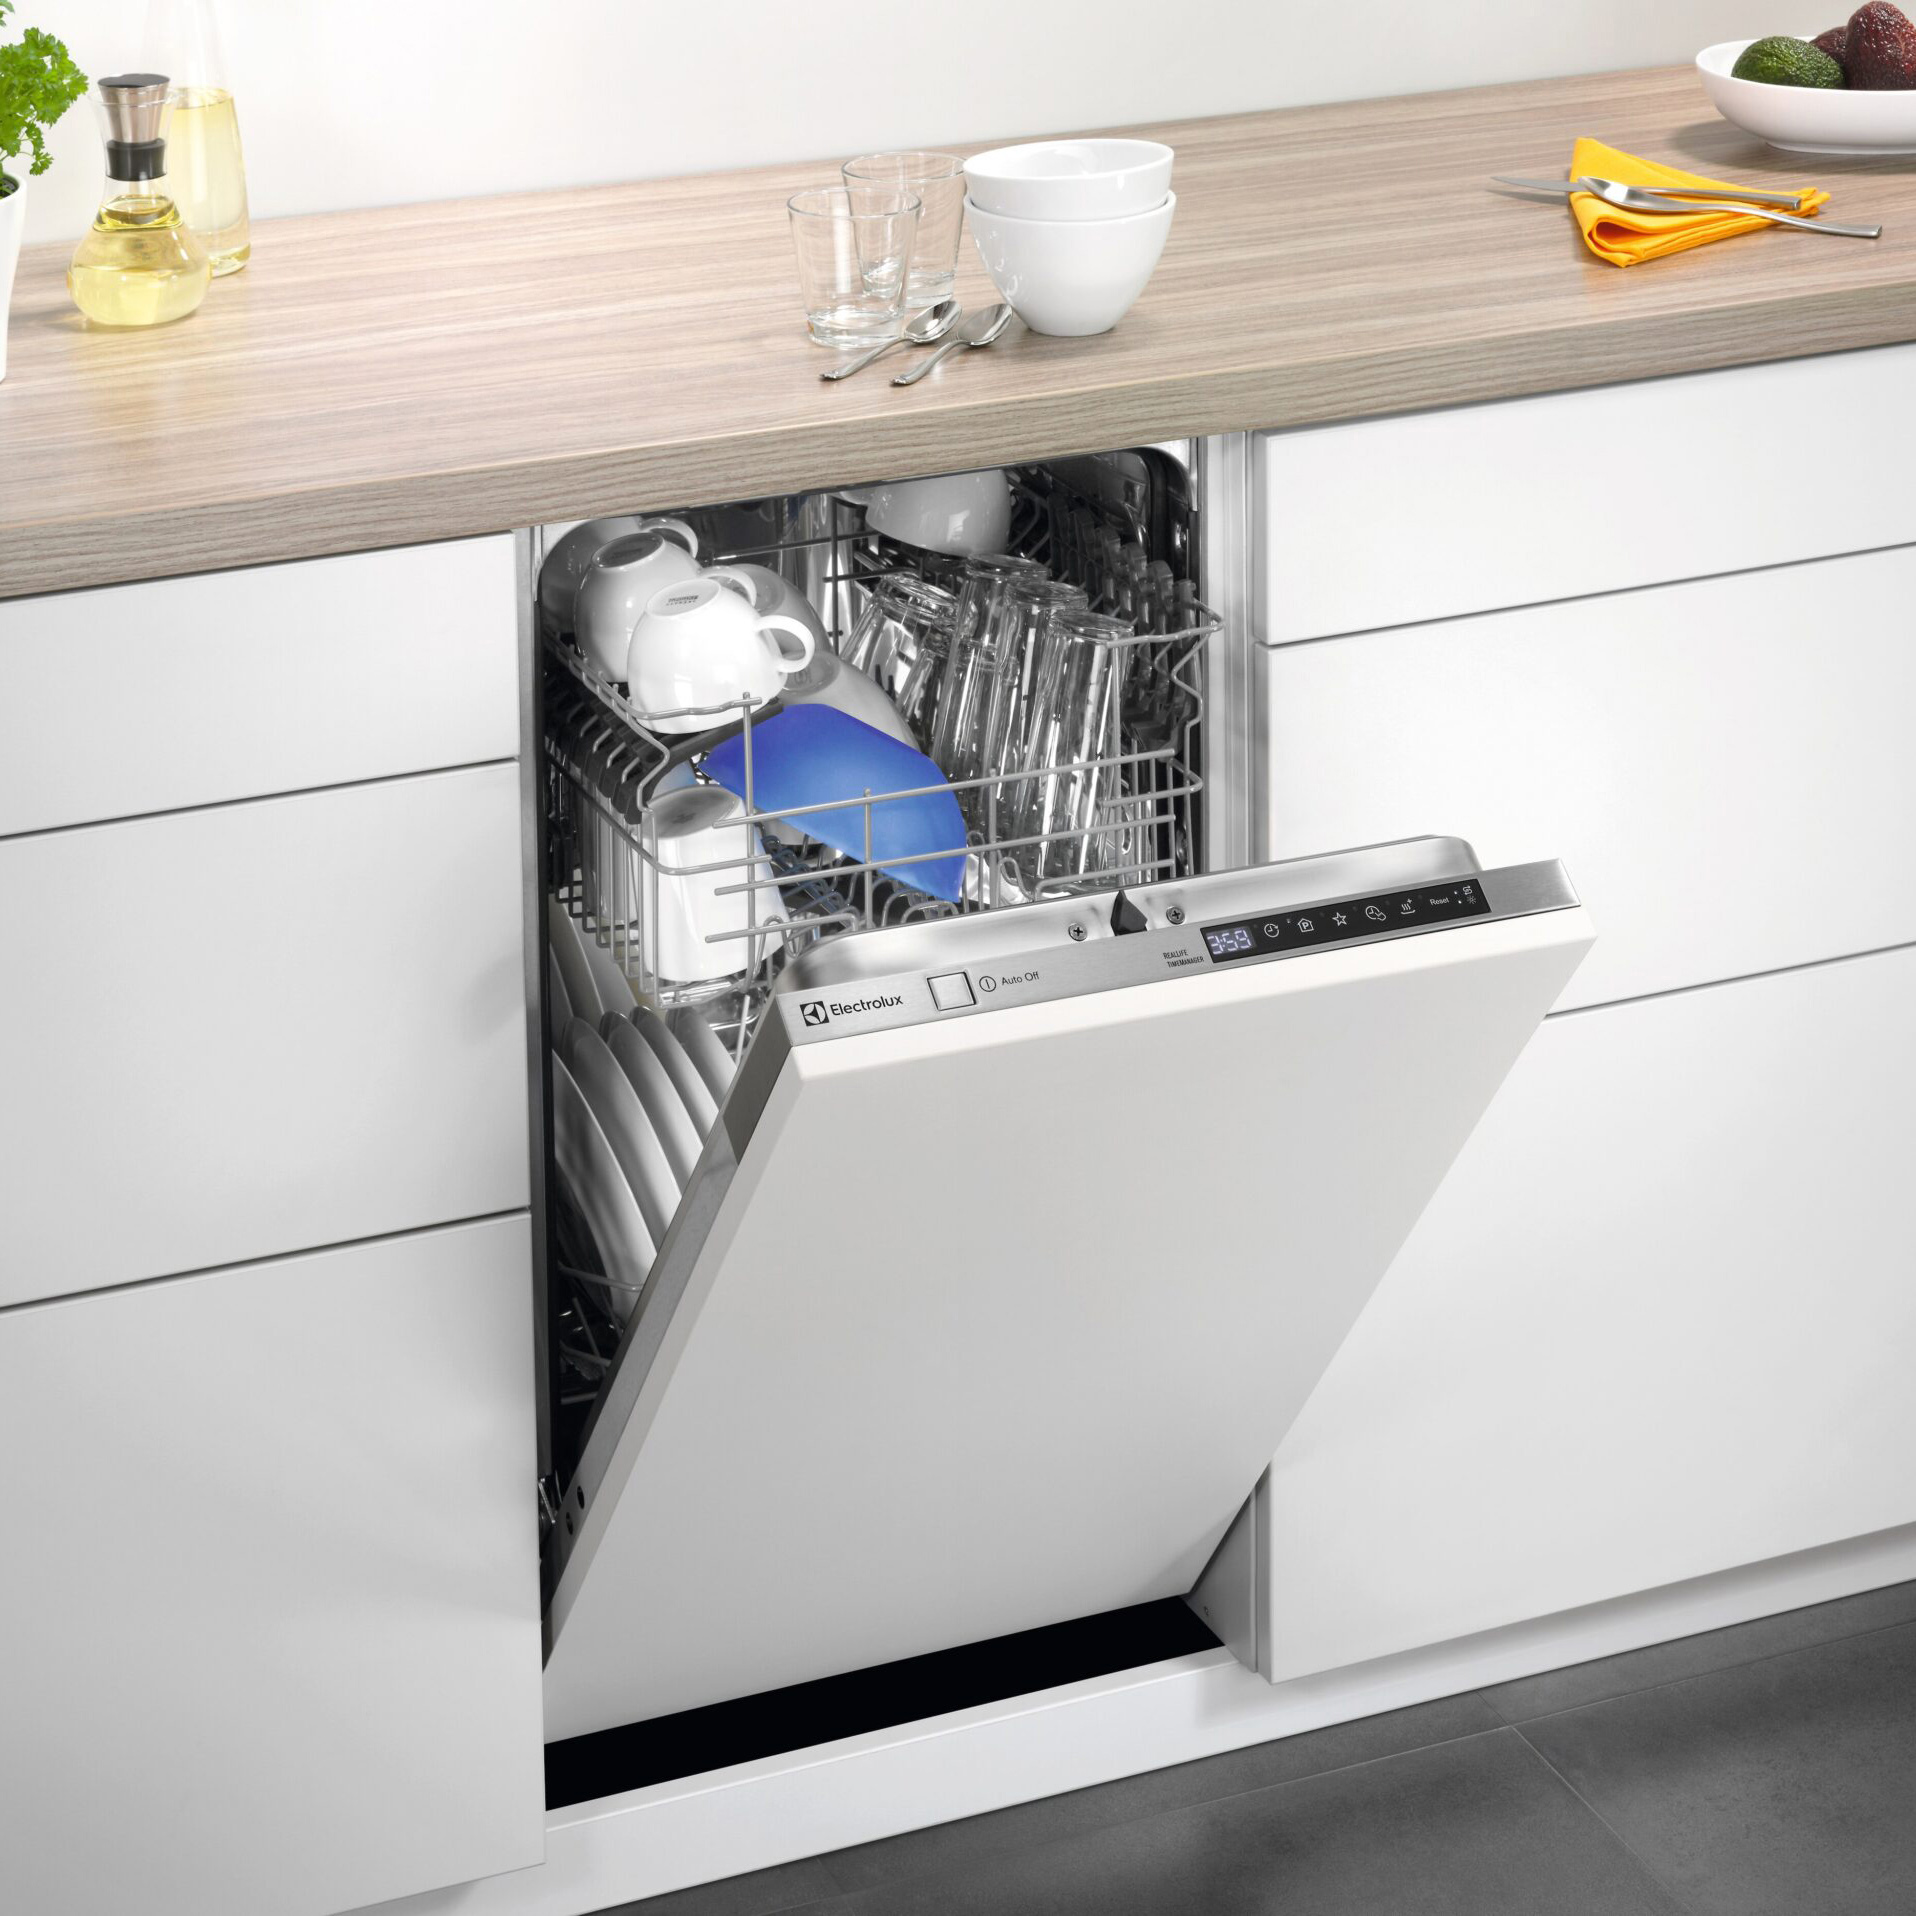 Встраиваемая посудомоечная машина Electrolux Slimline ESL94655RO, цвет белый - фото 6